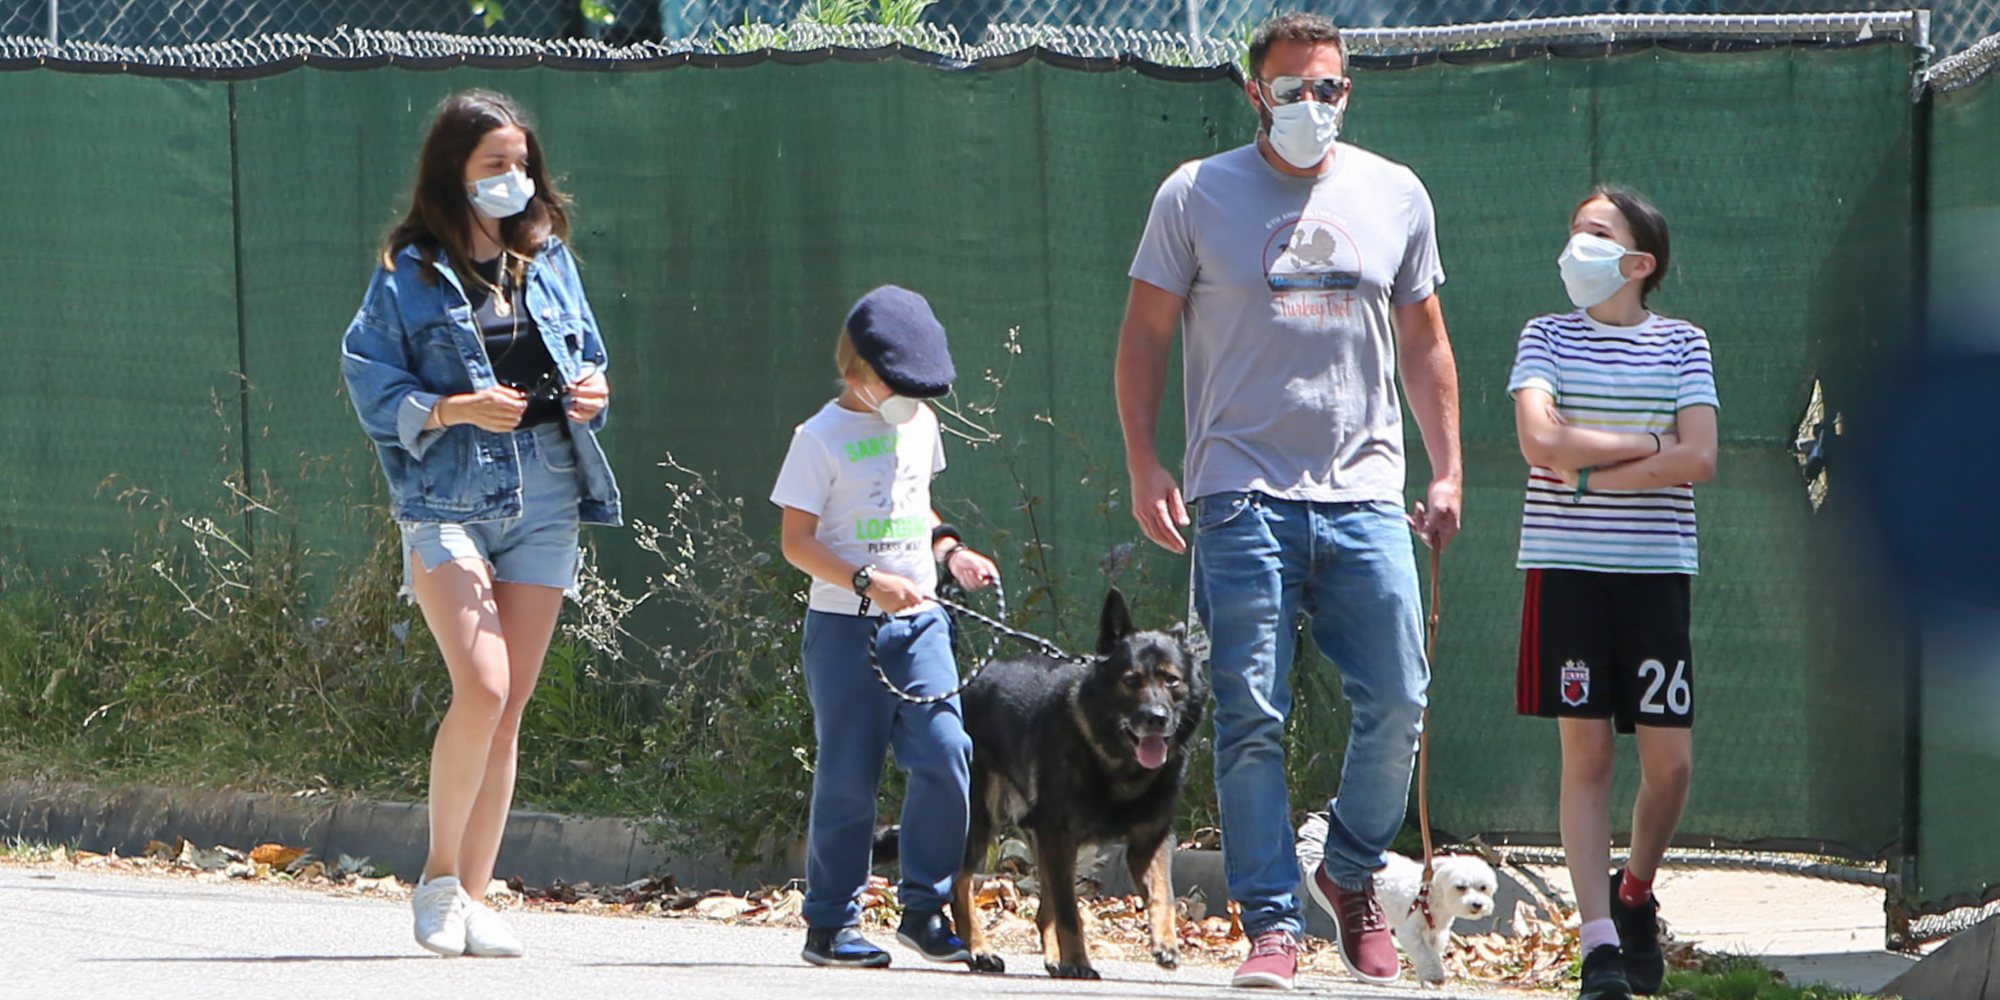 El paseo familiar de Ana de Armas y Ben Affleck con los hijos del actor